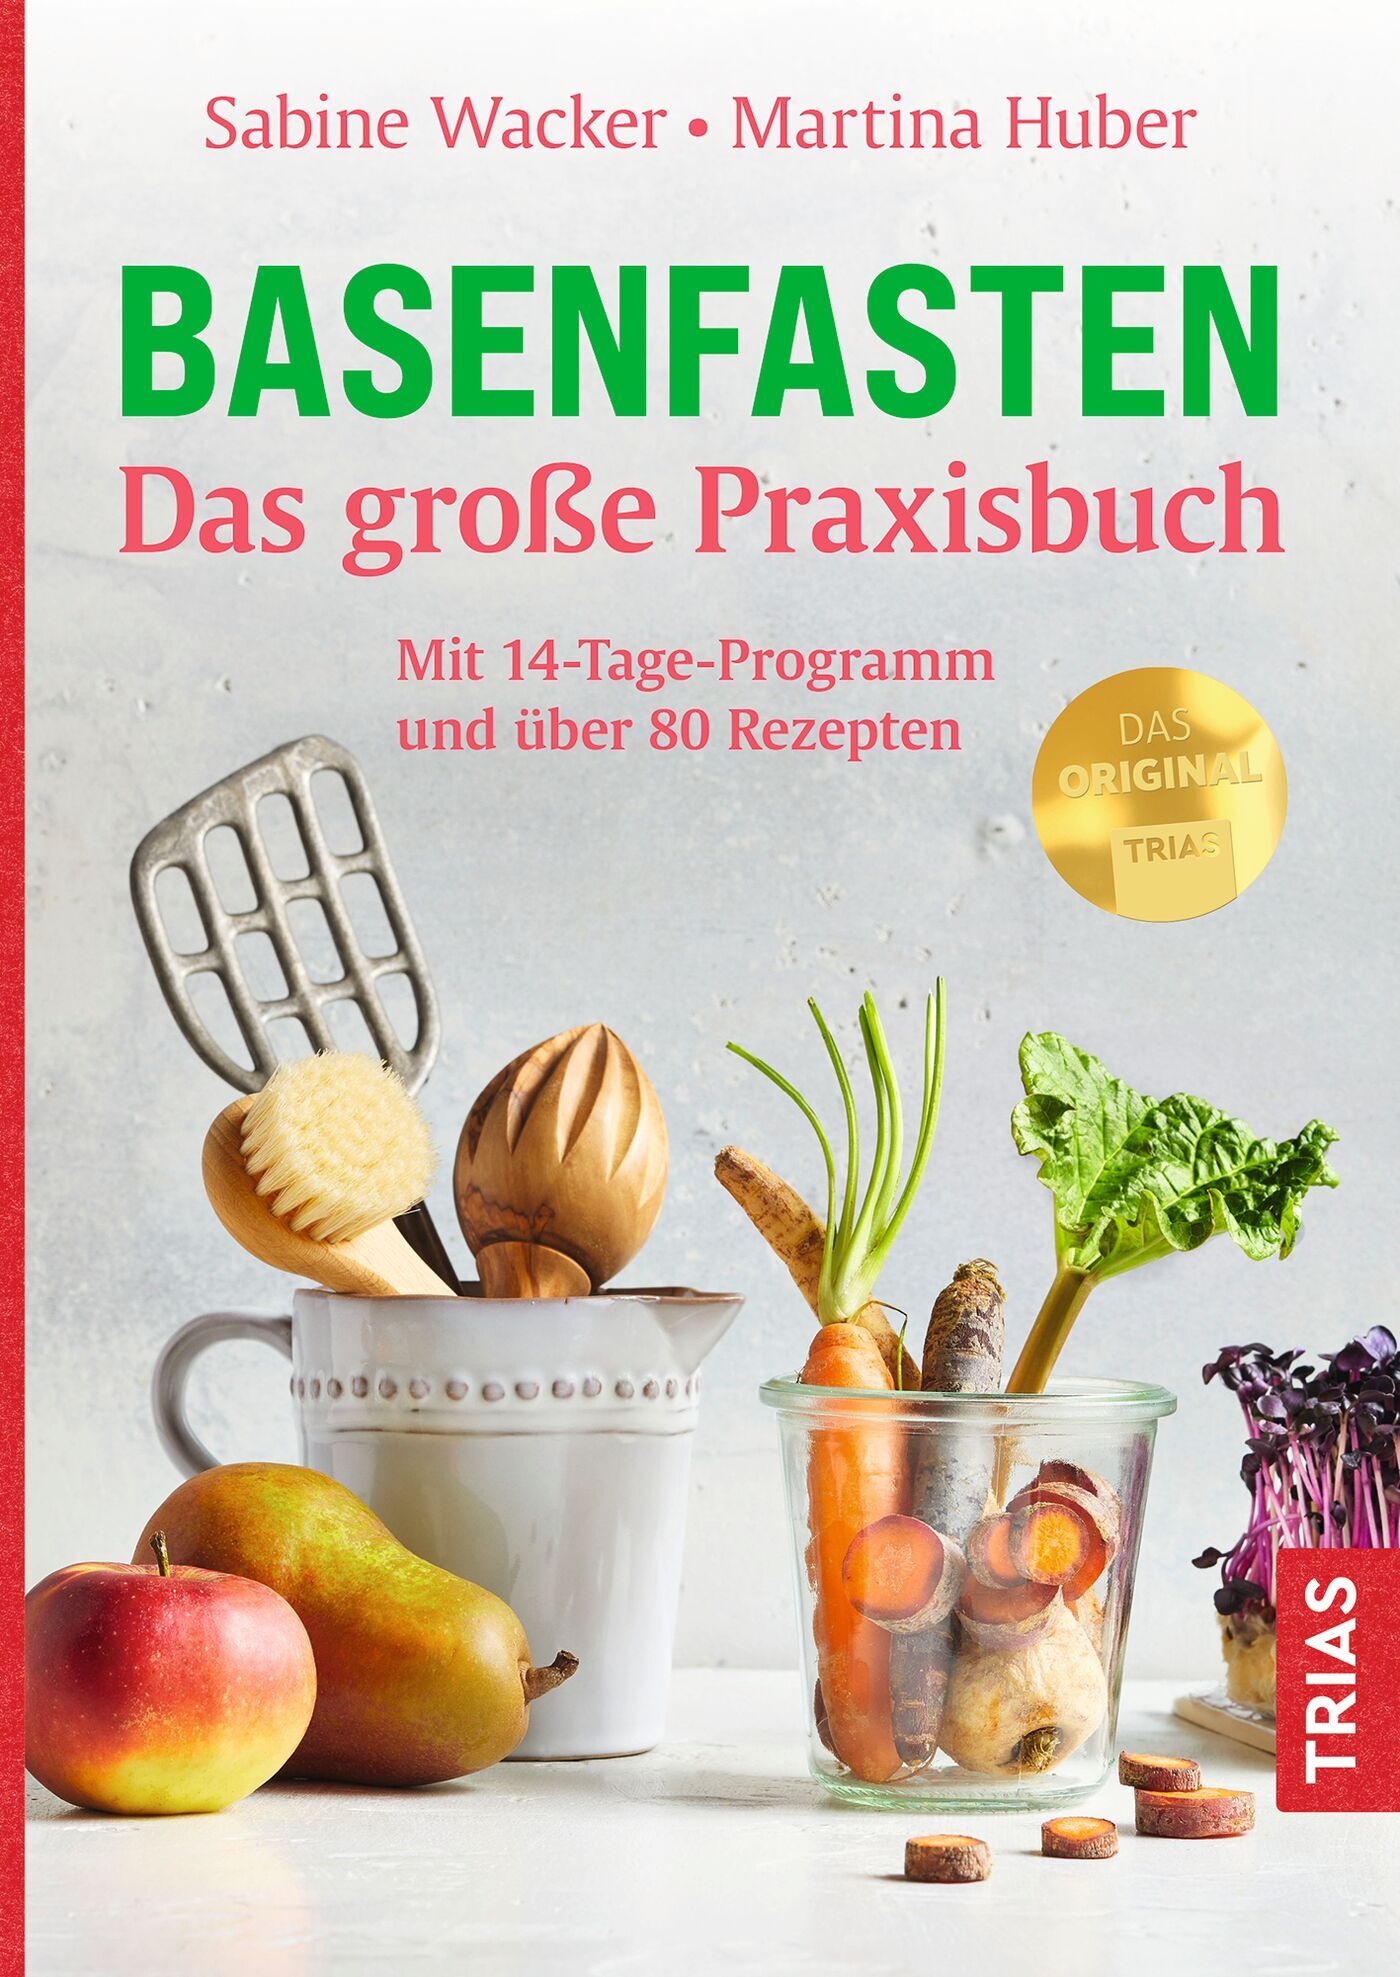 Basenfasten - Das große Praxisbuch, 9783432116891